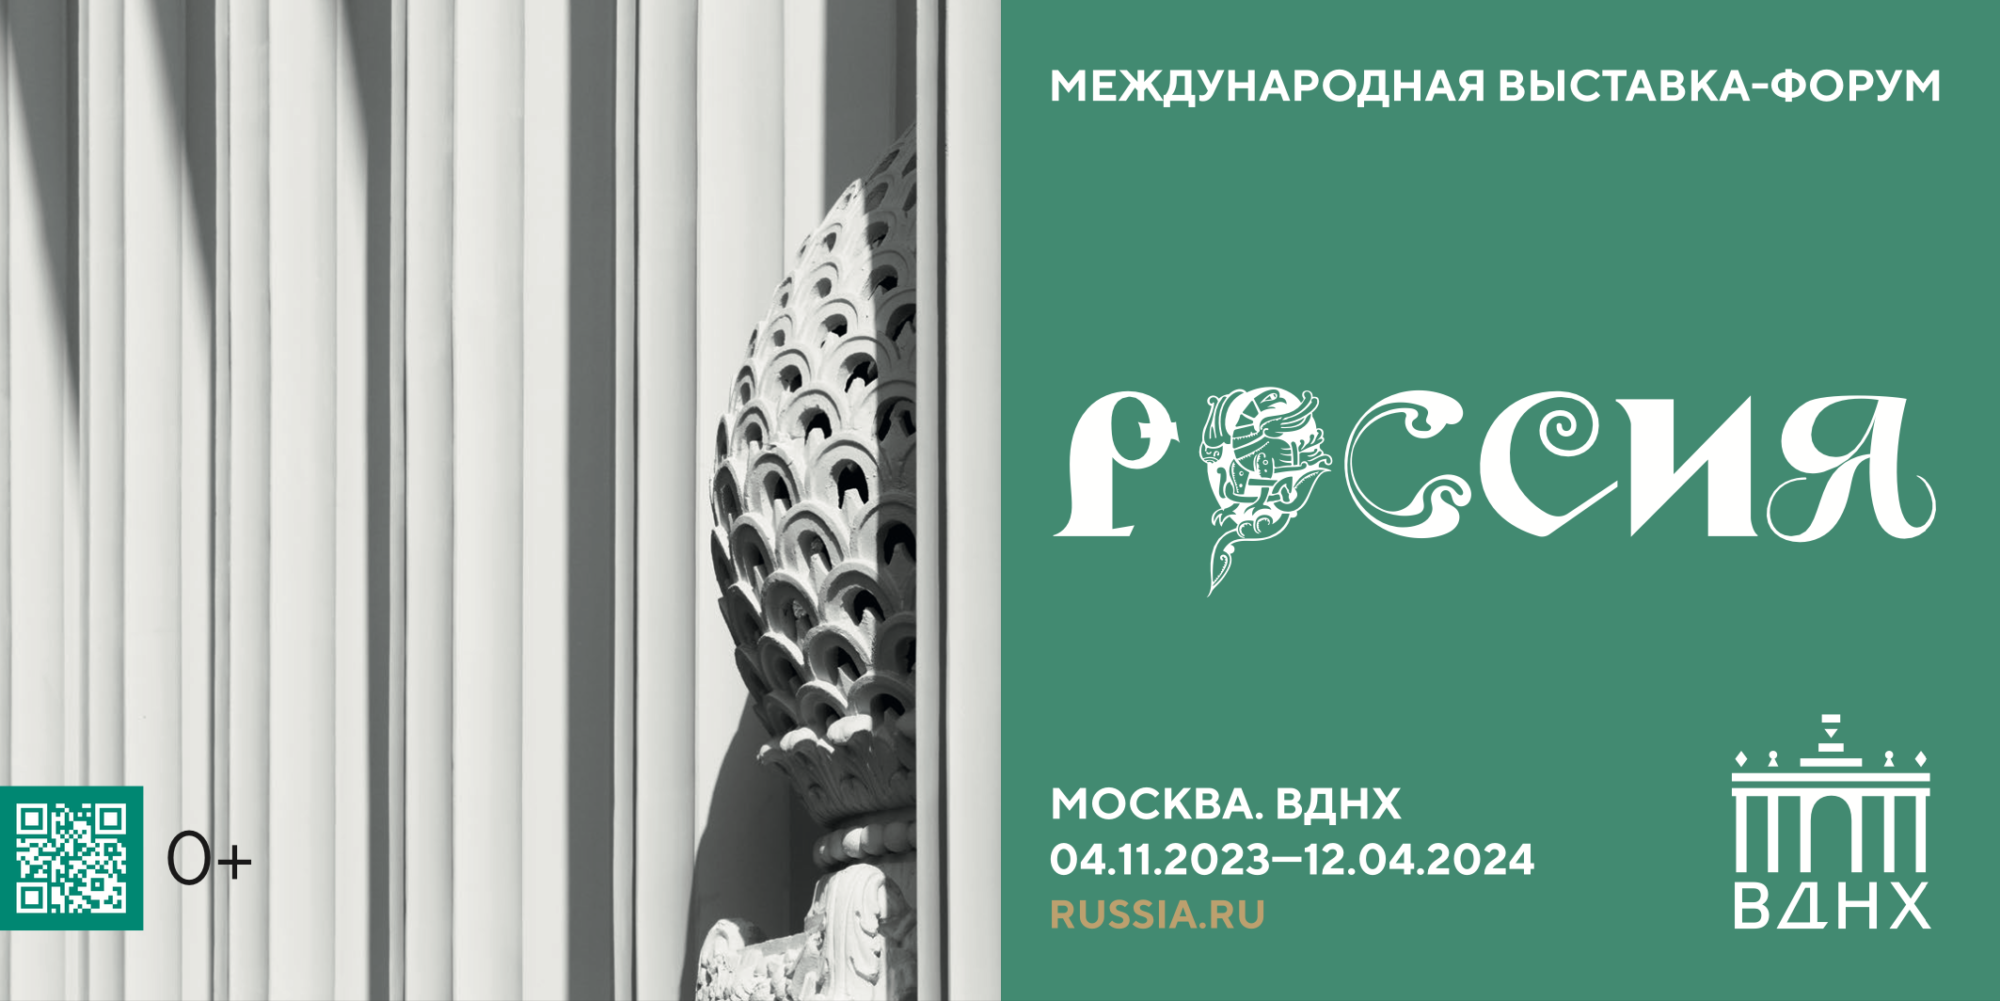 С 4 ноября 2023 года по 12 апреля 2024 года в г.Москве пройдет Международная выставка-форум 